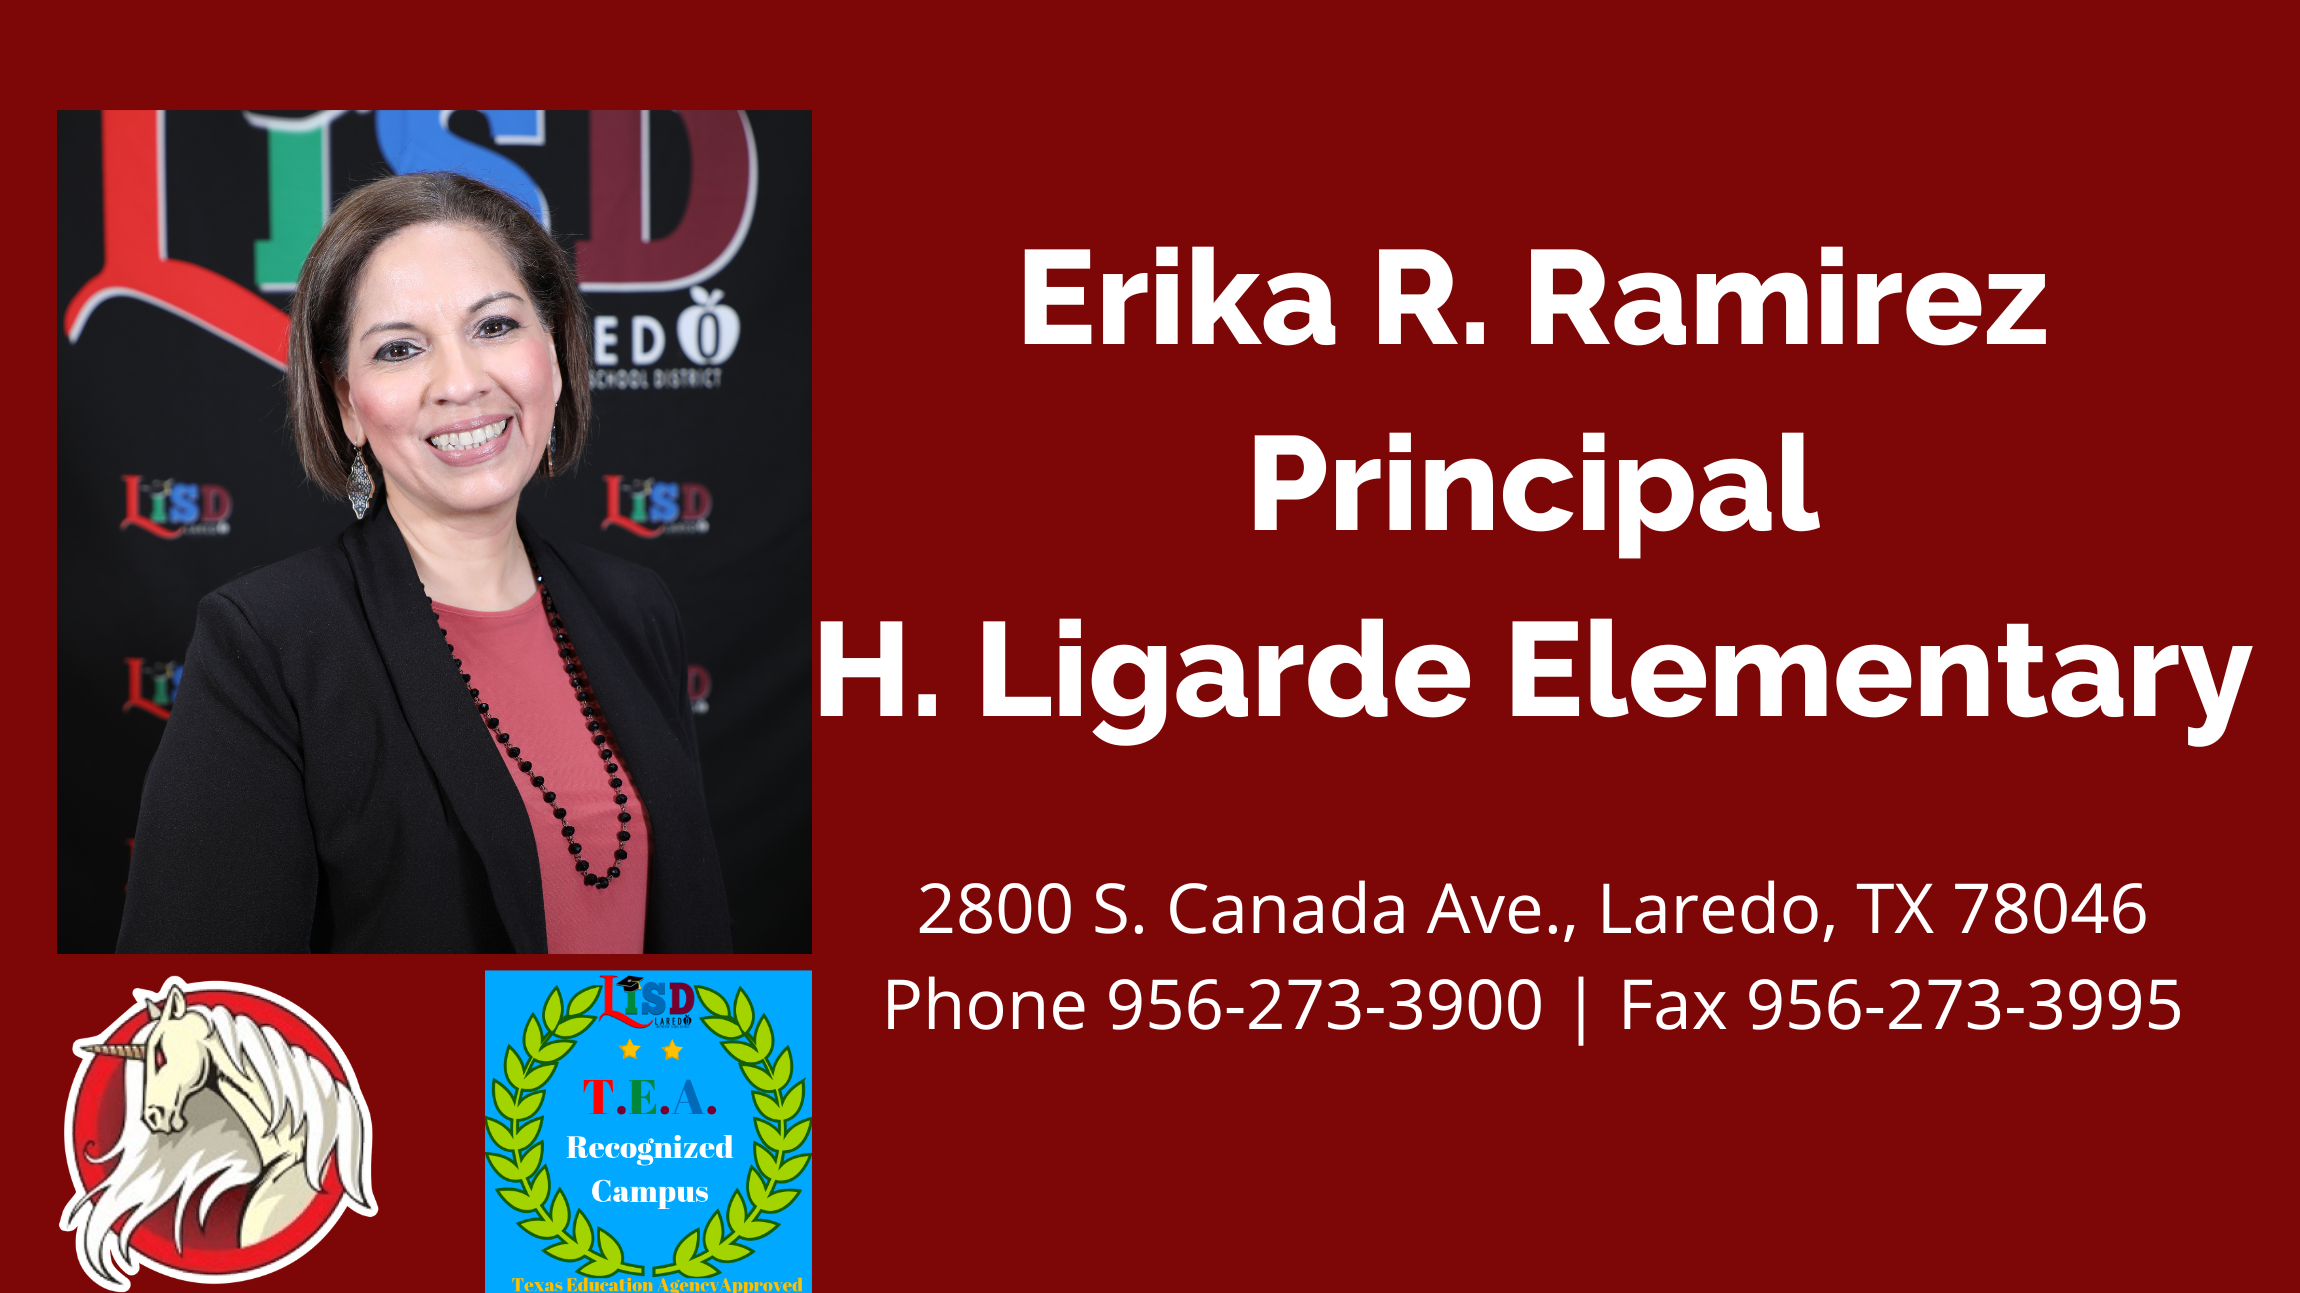 Erika R. Ramirez: Principal of H. Ligarde Elementary